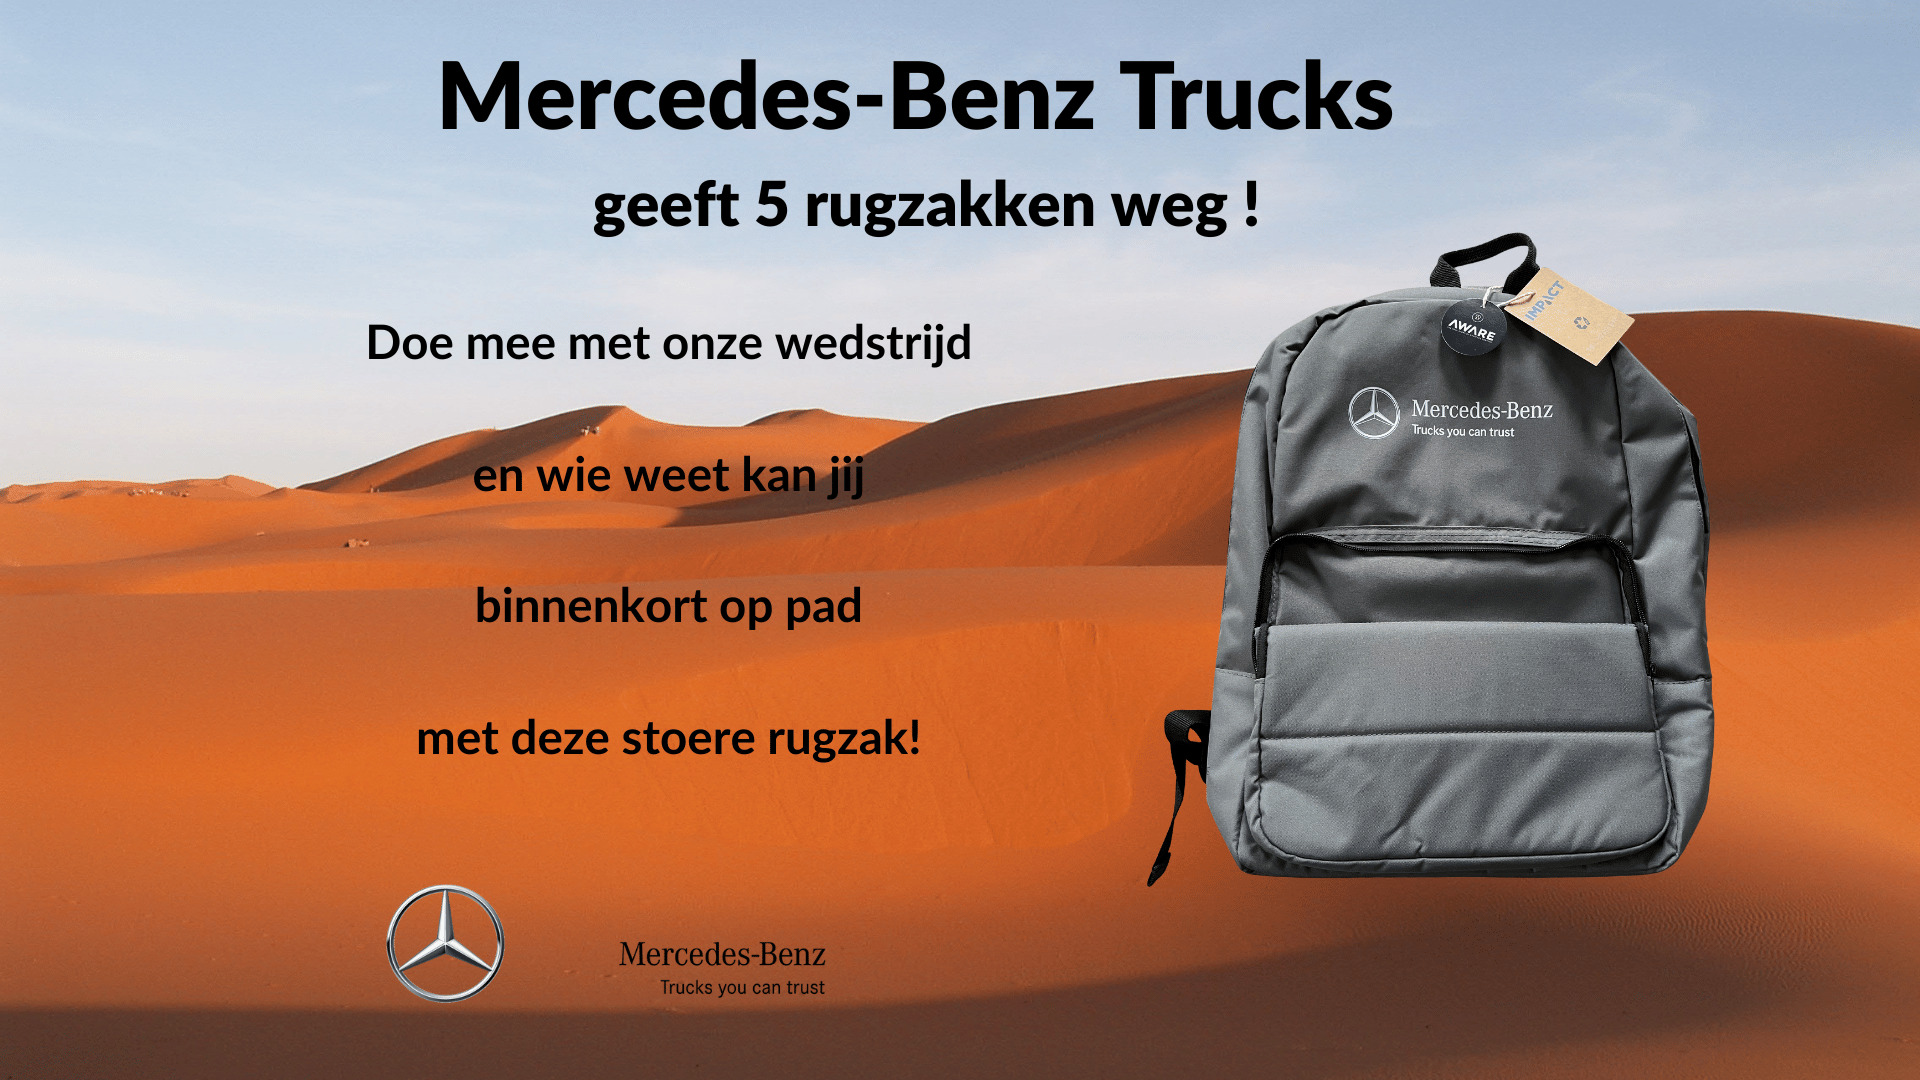 Wedstrijd: Mercedes-Benz Trucks geeft 5 rugzakken weg!